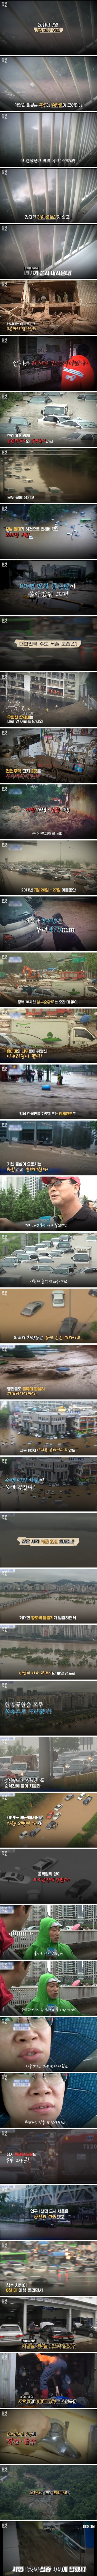 ',역대급 폭우',라던 9년 전 서울!.jpg